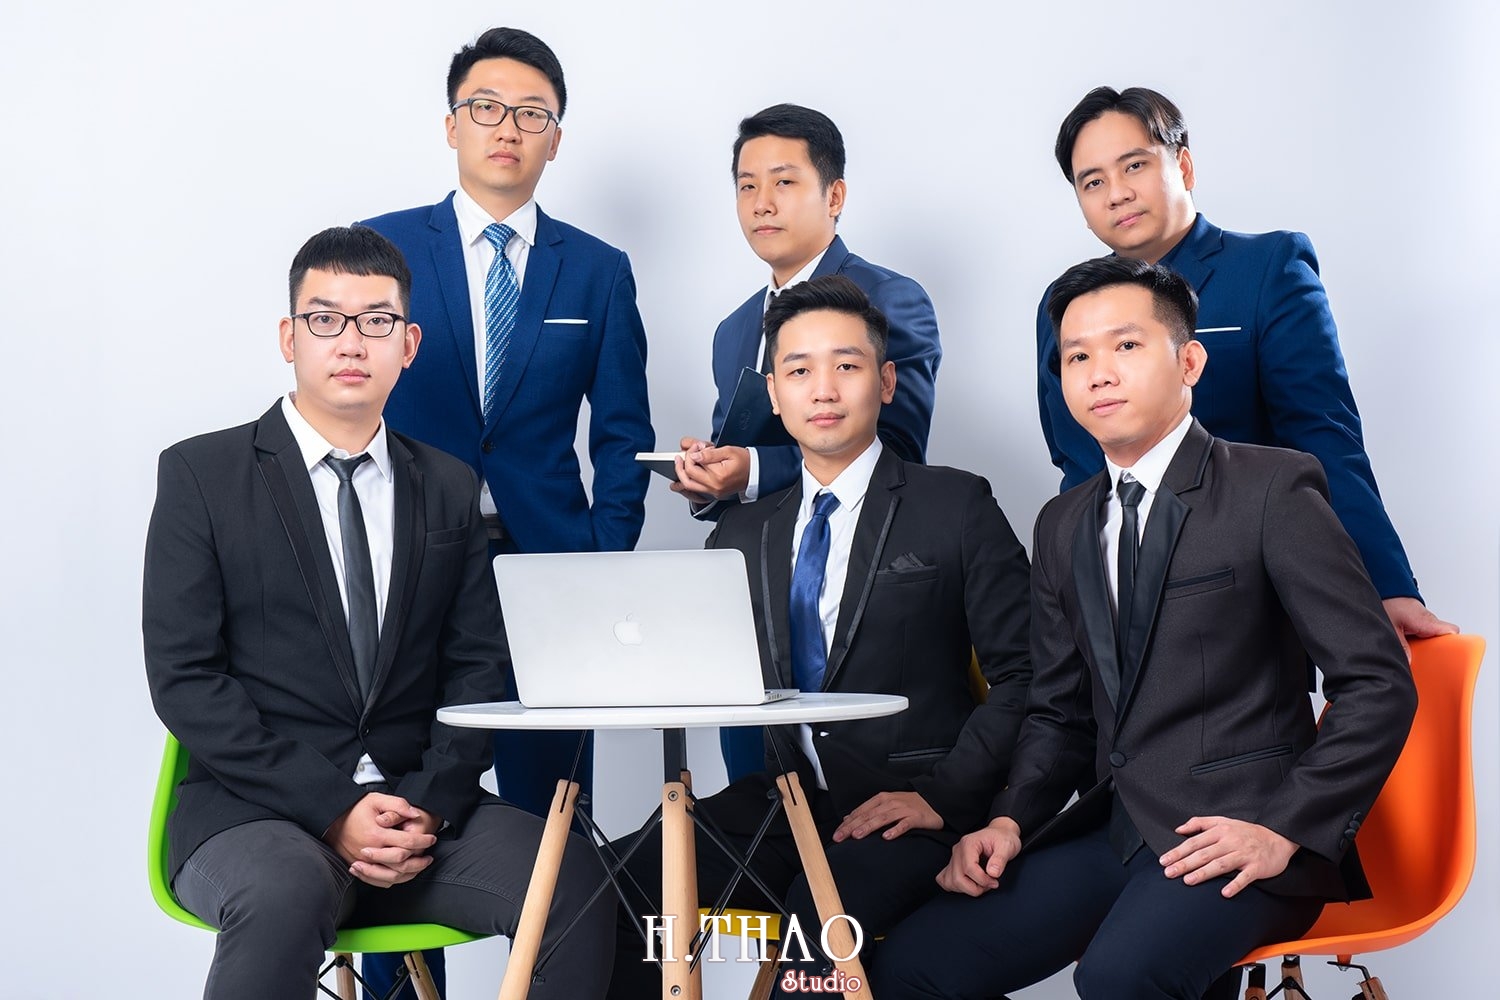 Anh profile cong ty 3 - Tổng hợp ảnh đẹp doanh nhân, profile, art tháng 4 – HThao Studio